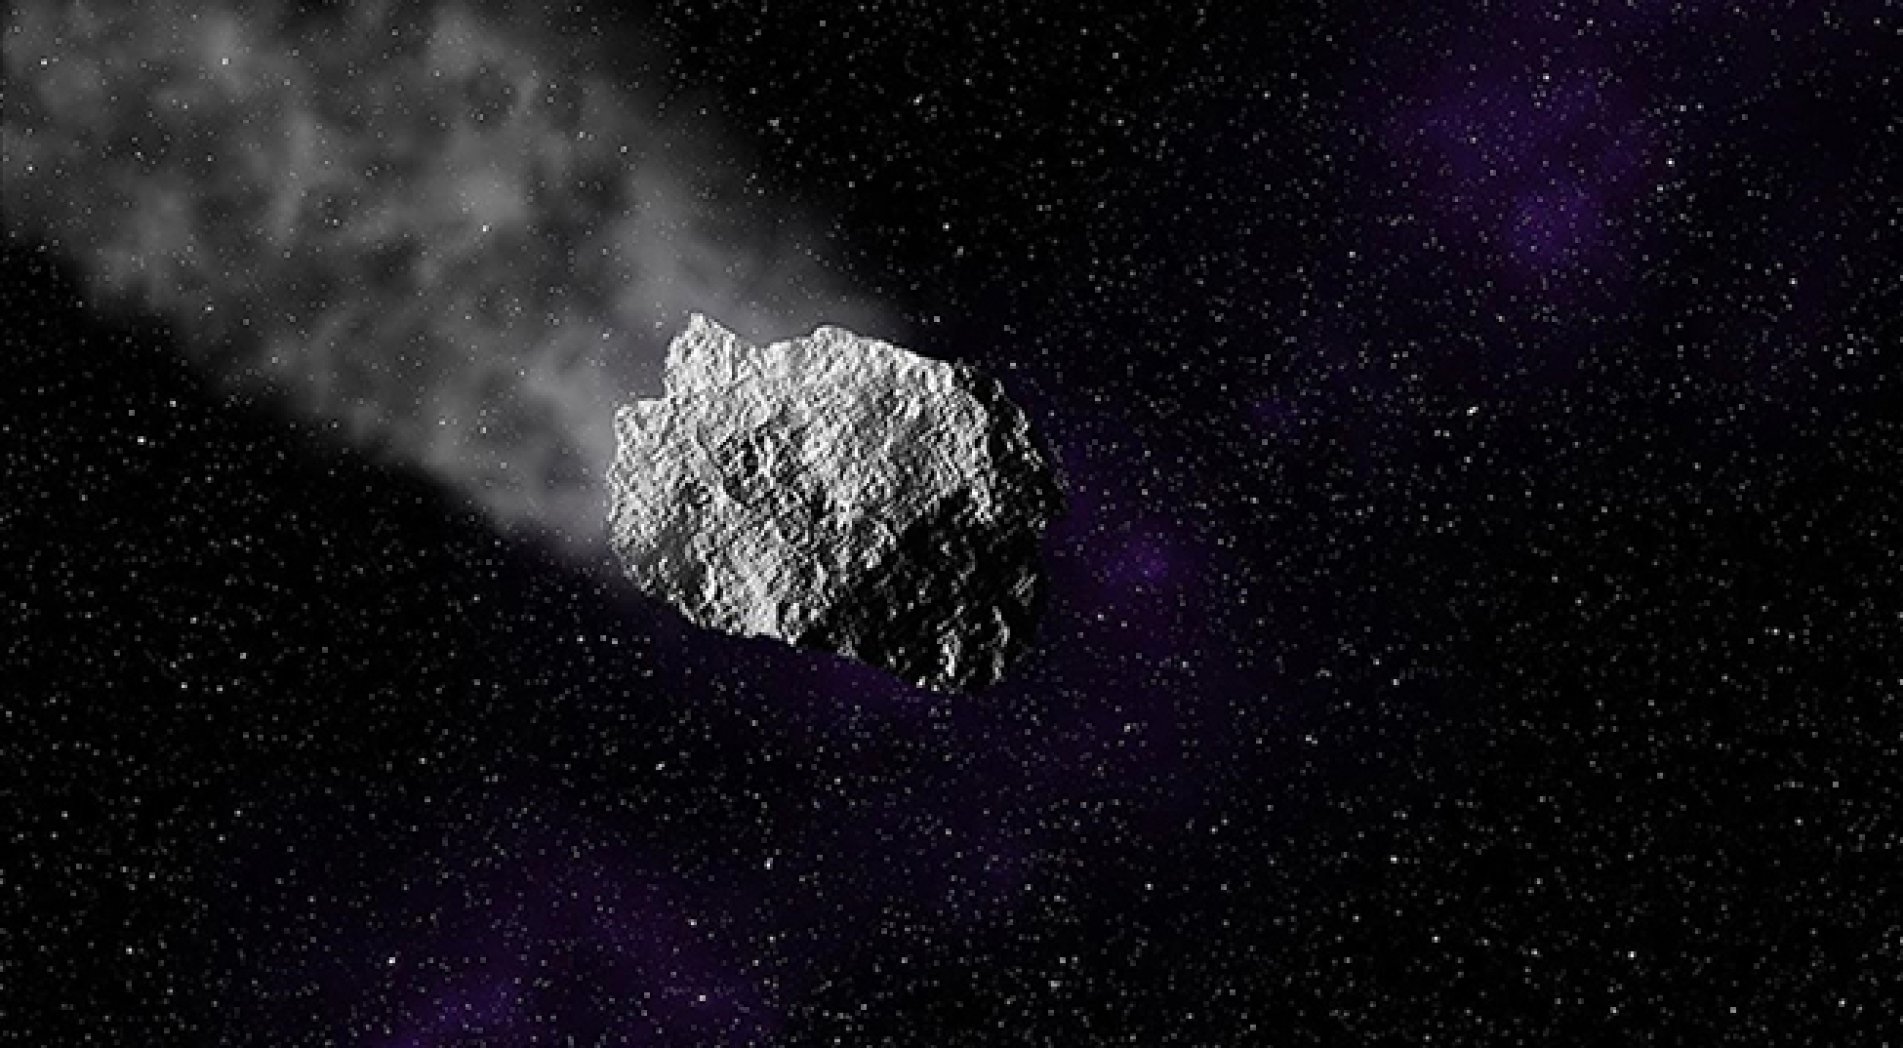 Dünyaya çarpma tehlikesi taşıyan asteroitler hakkında uzay çalışmaları sürüyor